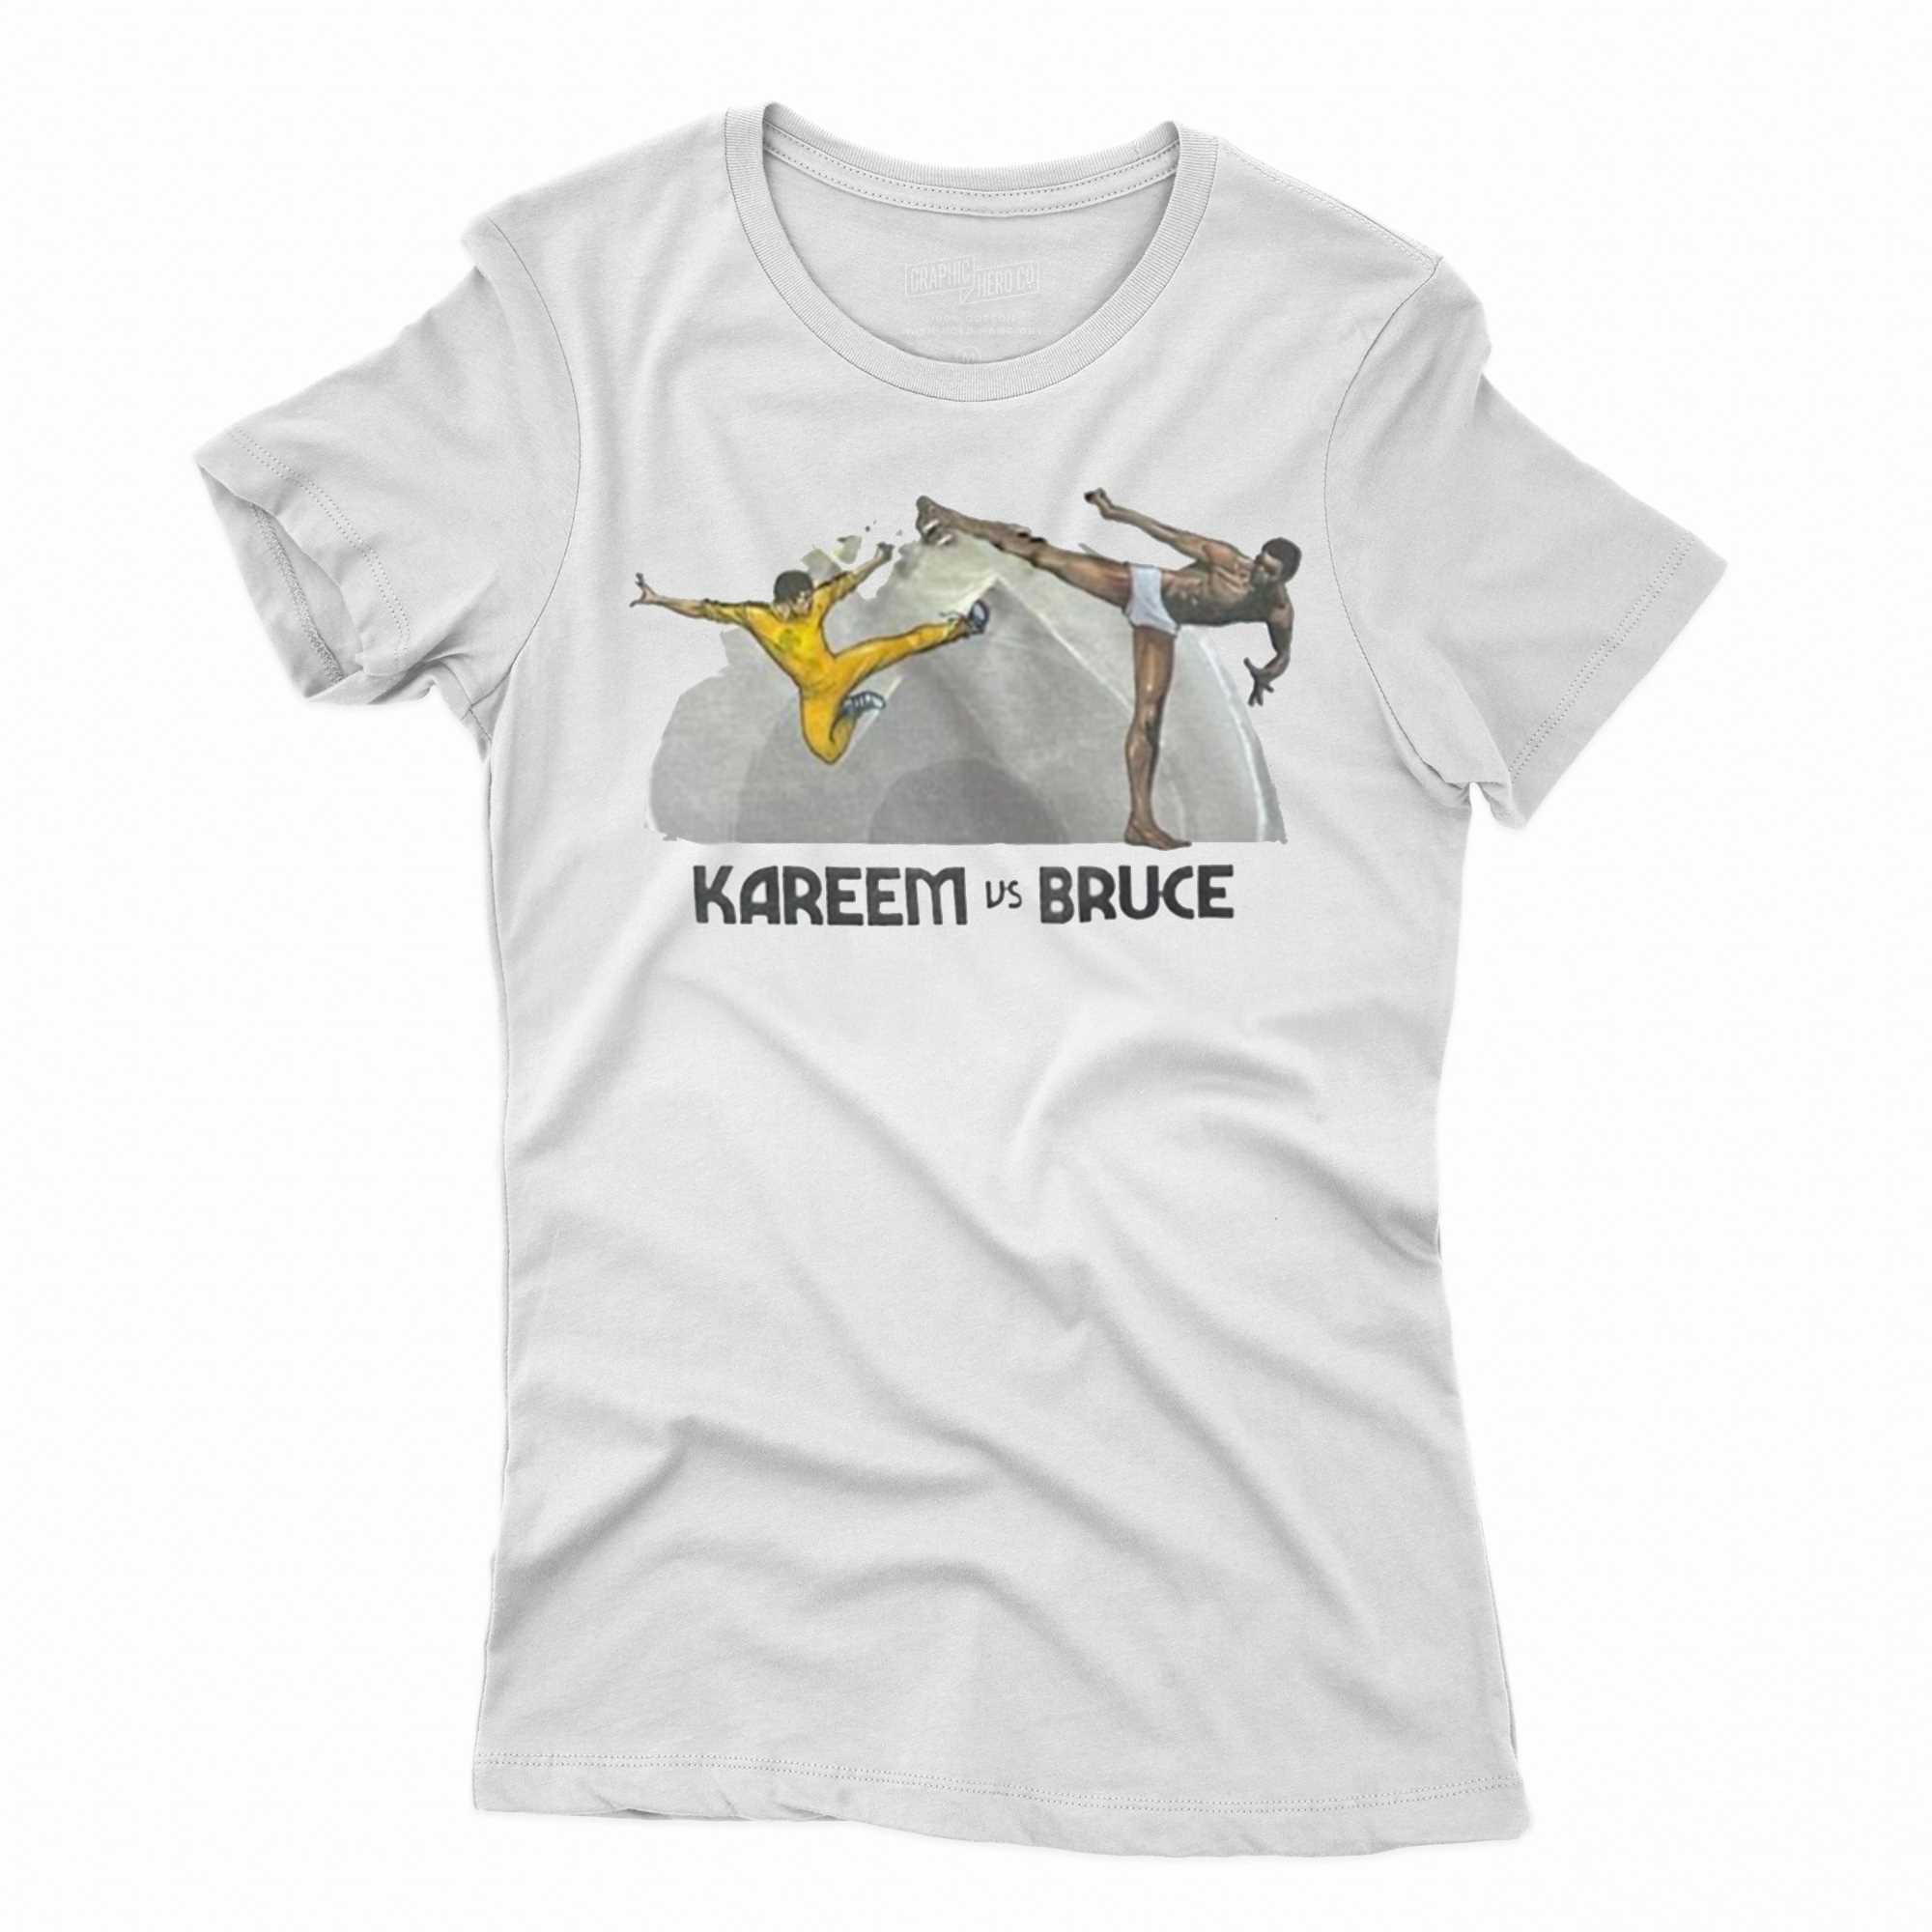 Kareem Abdul-jabbar Kareem Vs Bruce Shirt - Shibtee Clothing